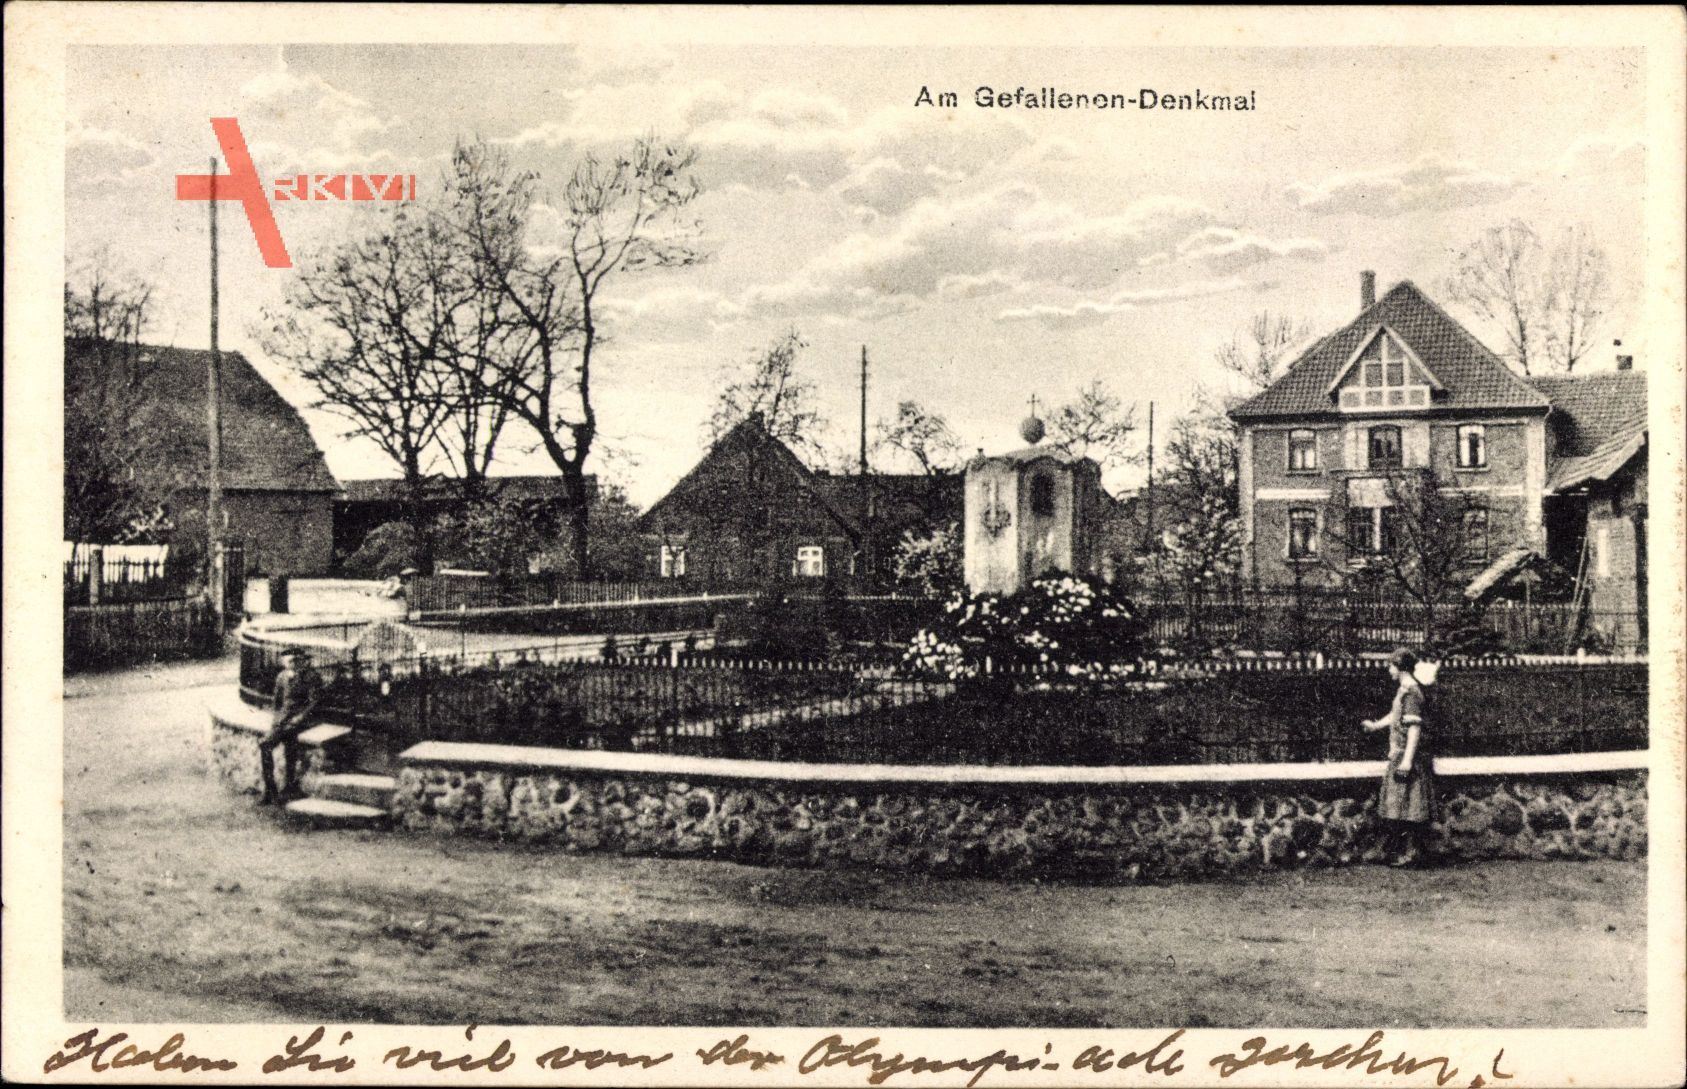 Leiferde Landkreis Gifhorn, Partie am Gefallenen Denkmal, Wohnhäuser